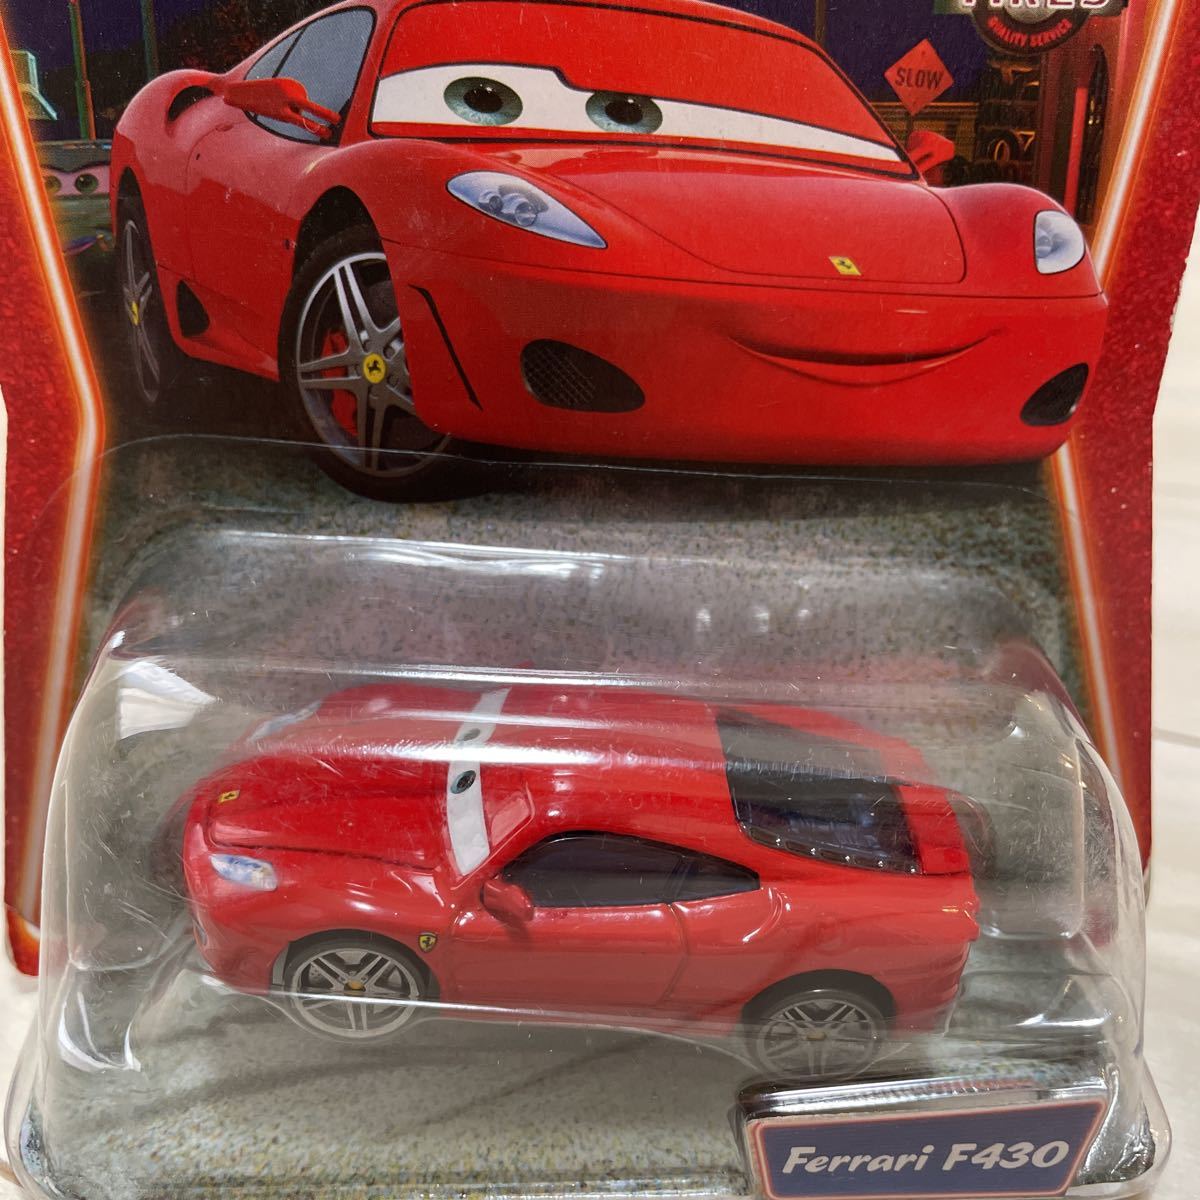  Mattel The Cars Disney Ferrari F430 FERRARI CARS MATTEL minicar character car rare 